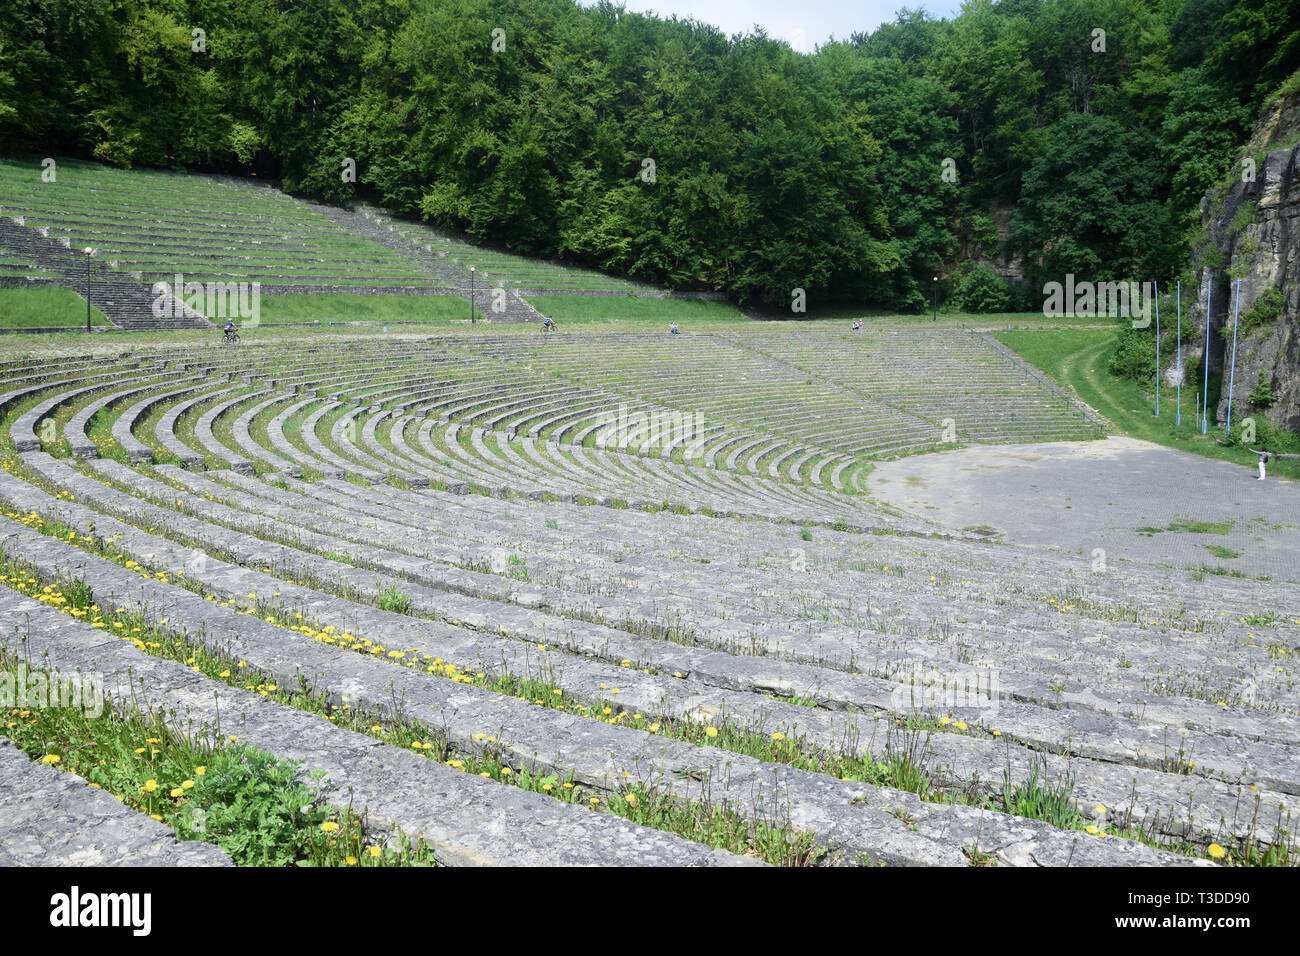 Anfiteatro sul Sant'Anna Mount. Antico tedesco (nazi) anfiteatro in Polonia. Foto Stock